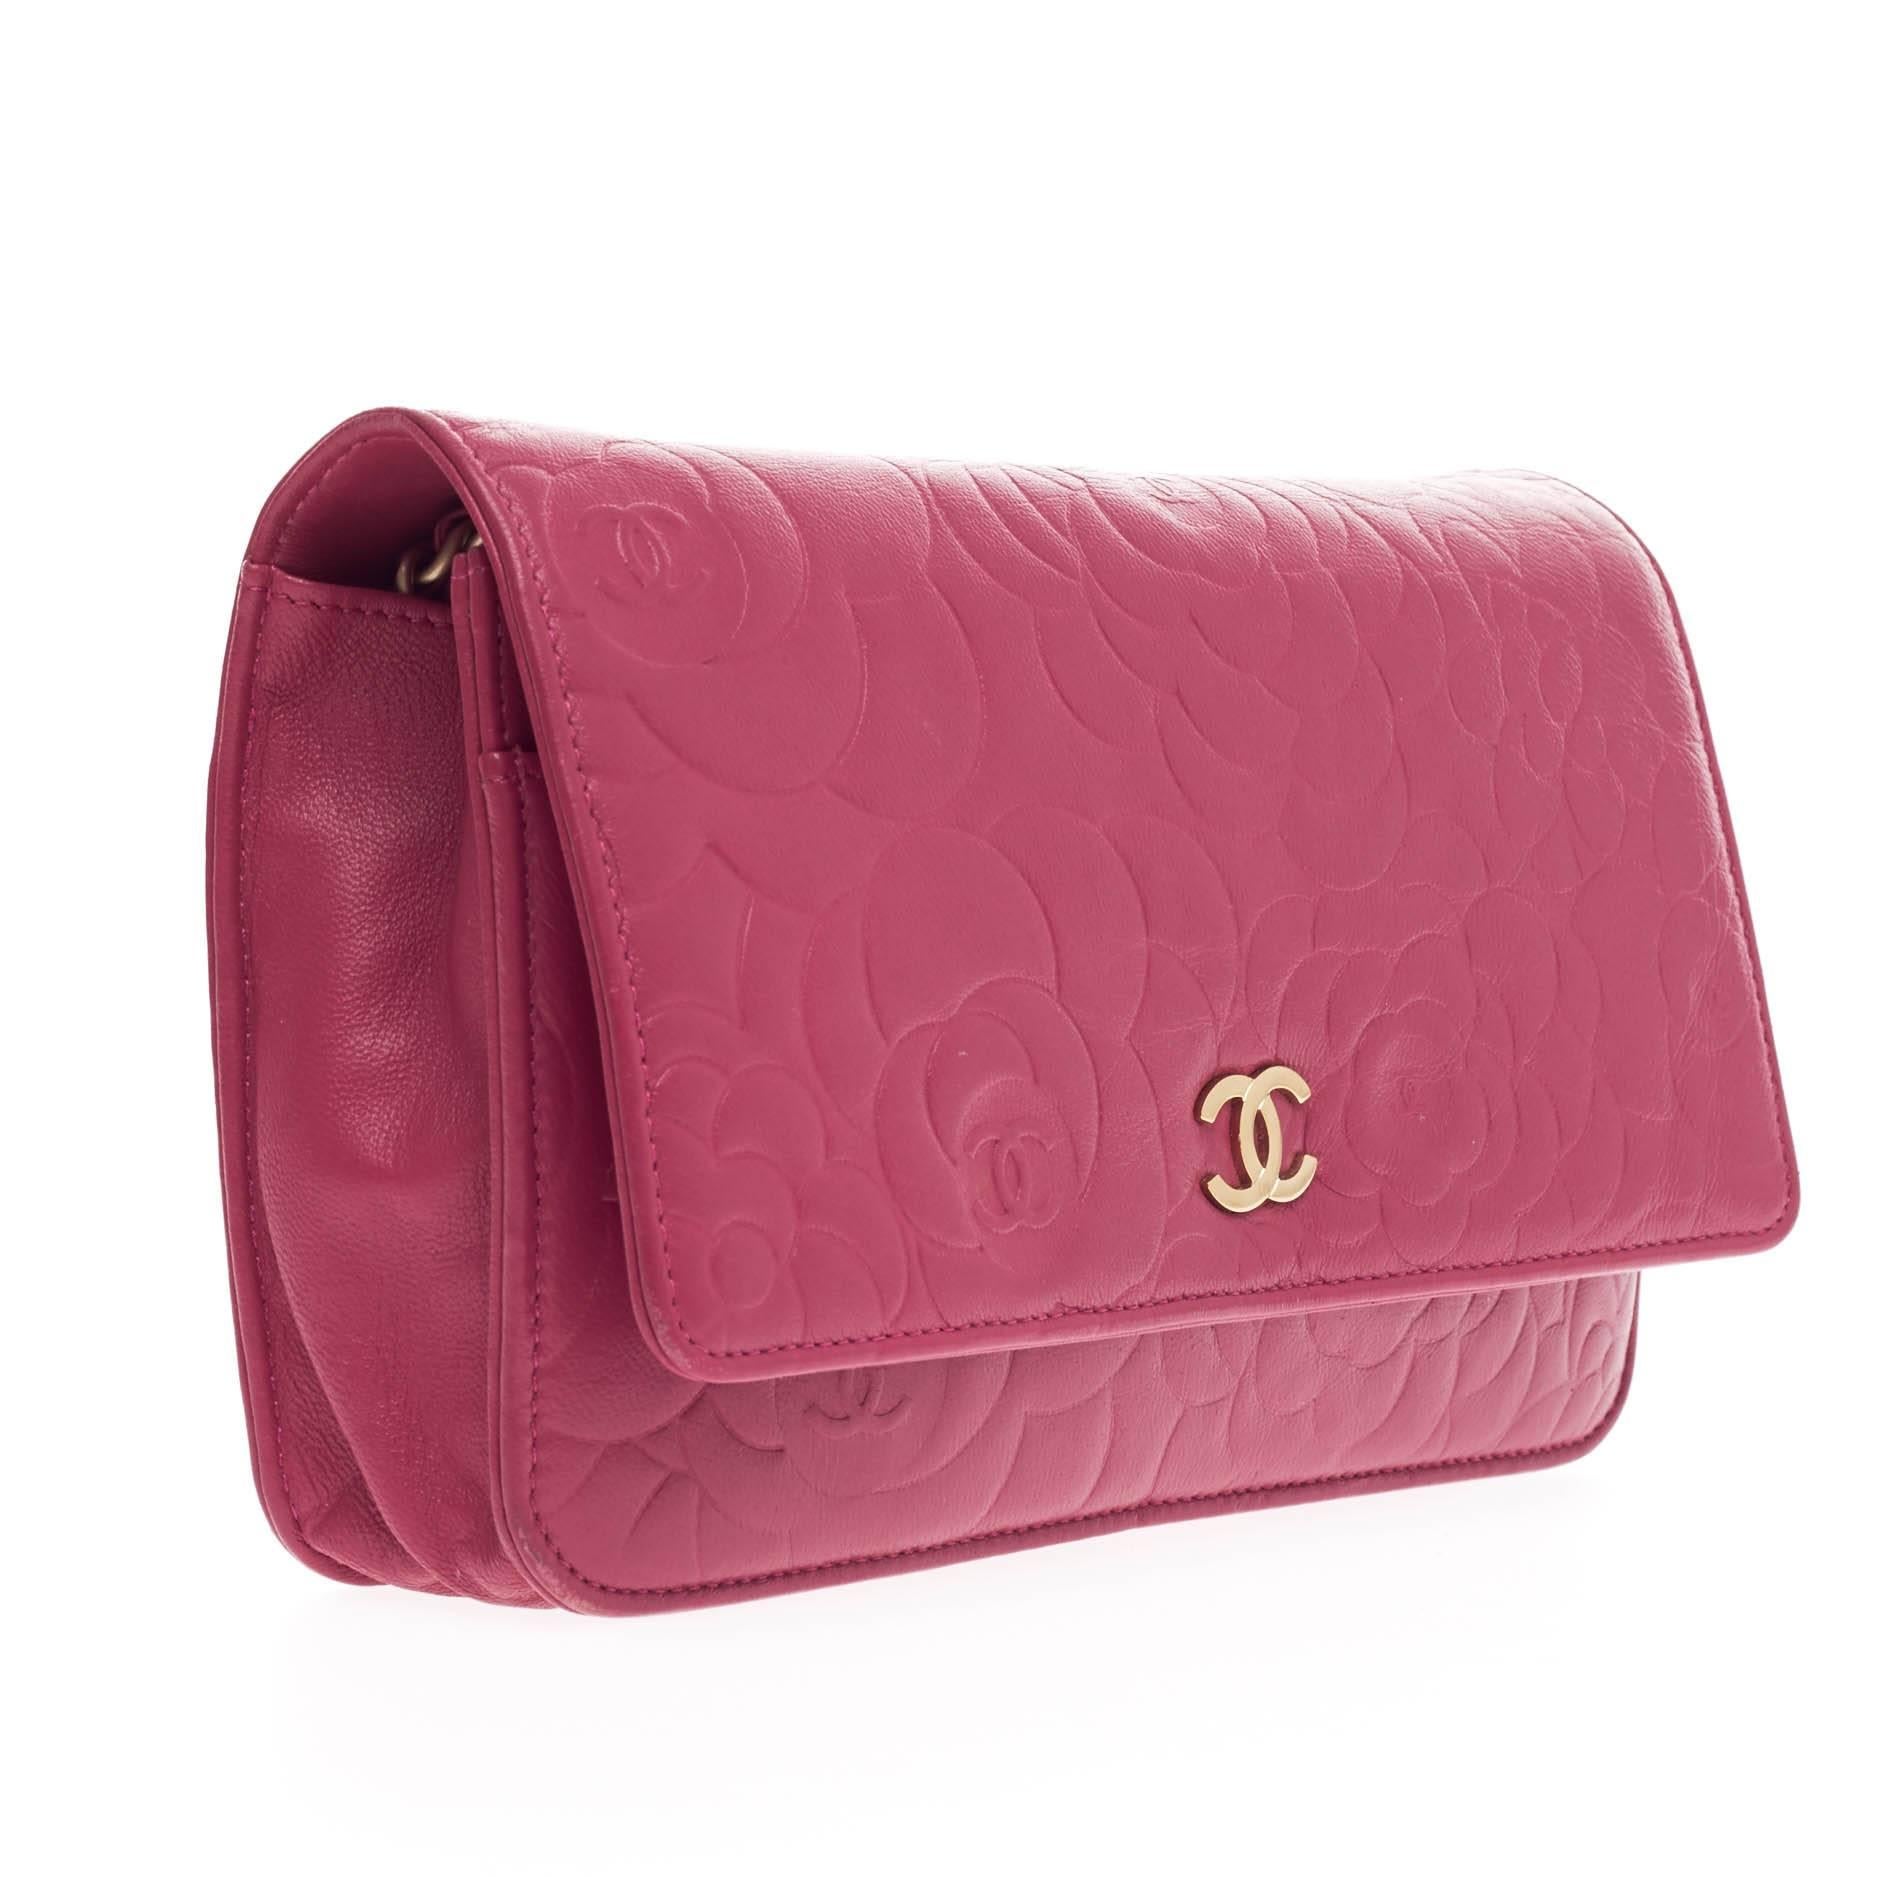 Women's Chanel Wallet on Chain Camellia Lambskin